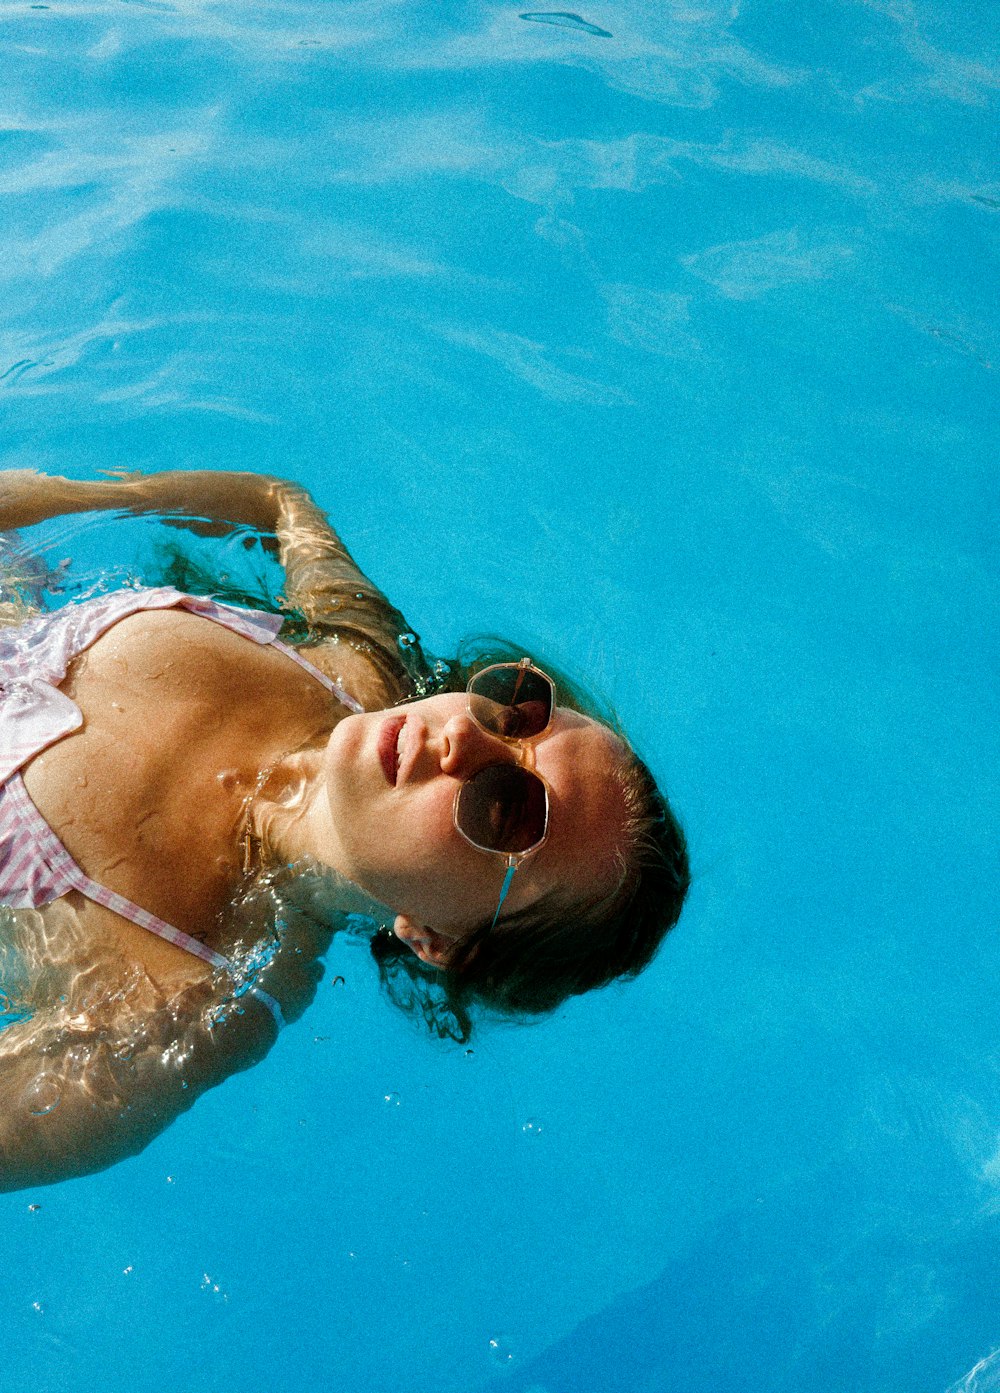 a woman in a bikini swimming in a pool